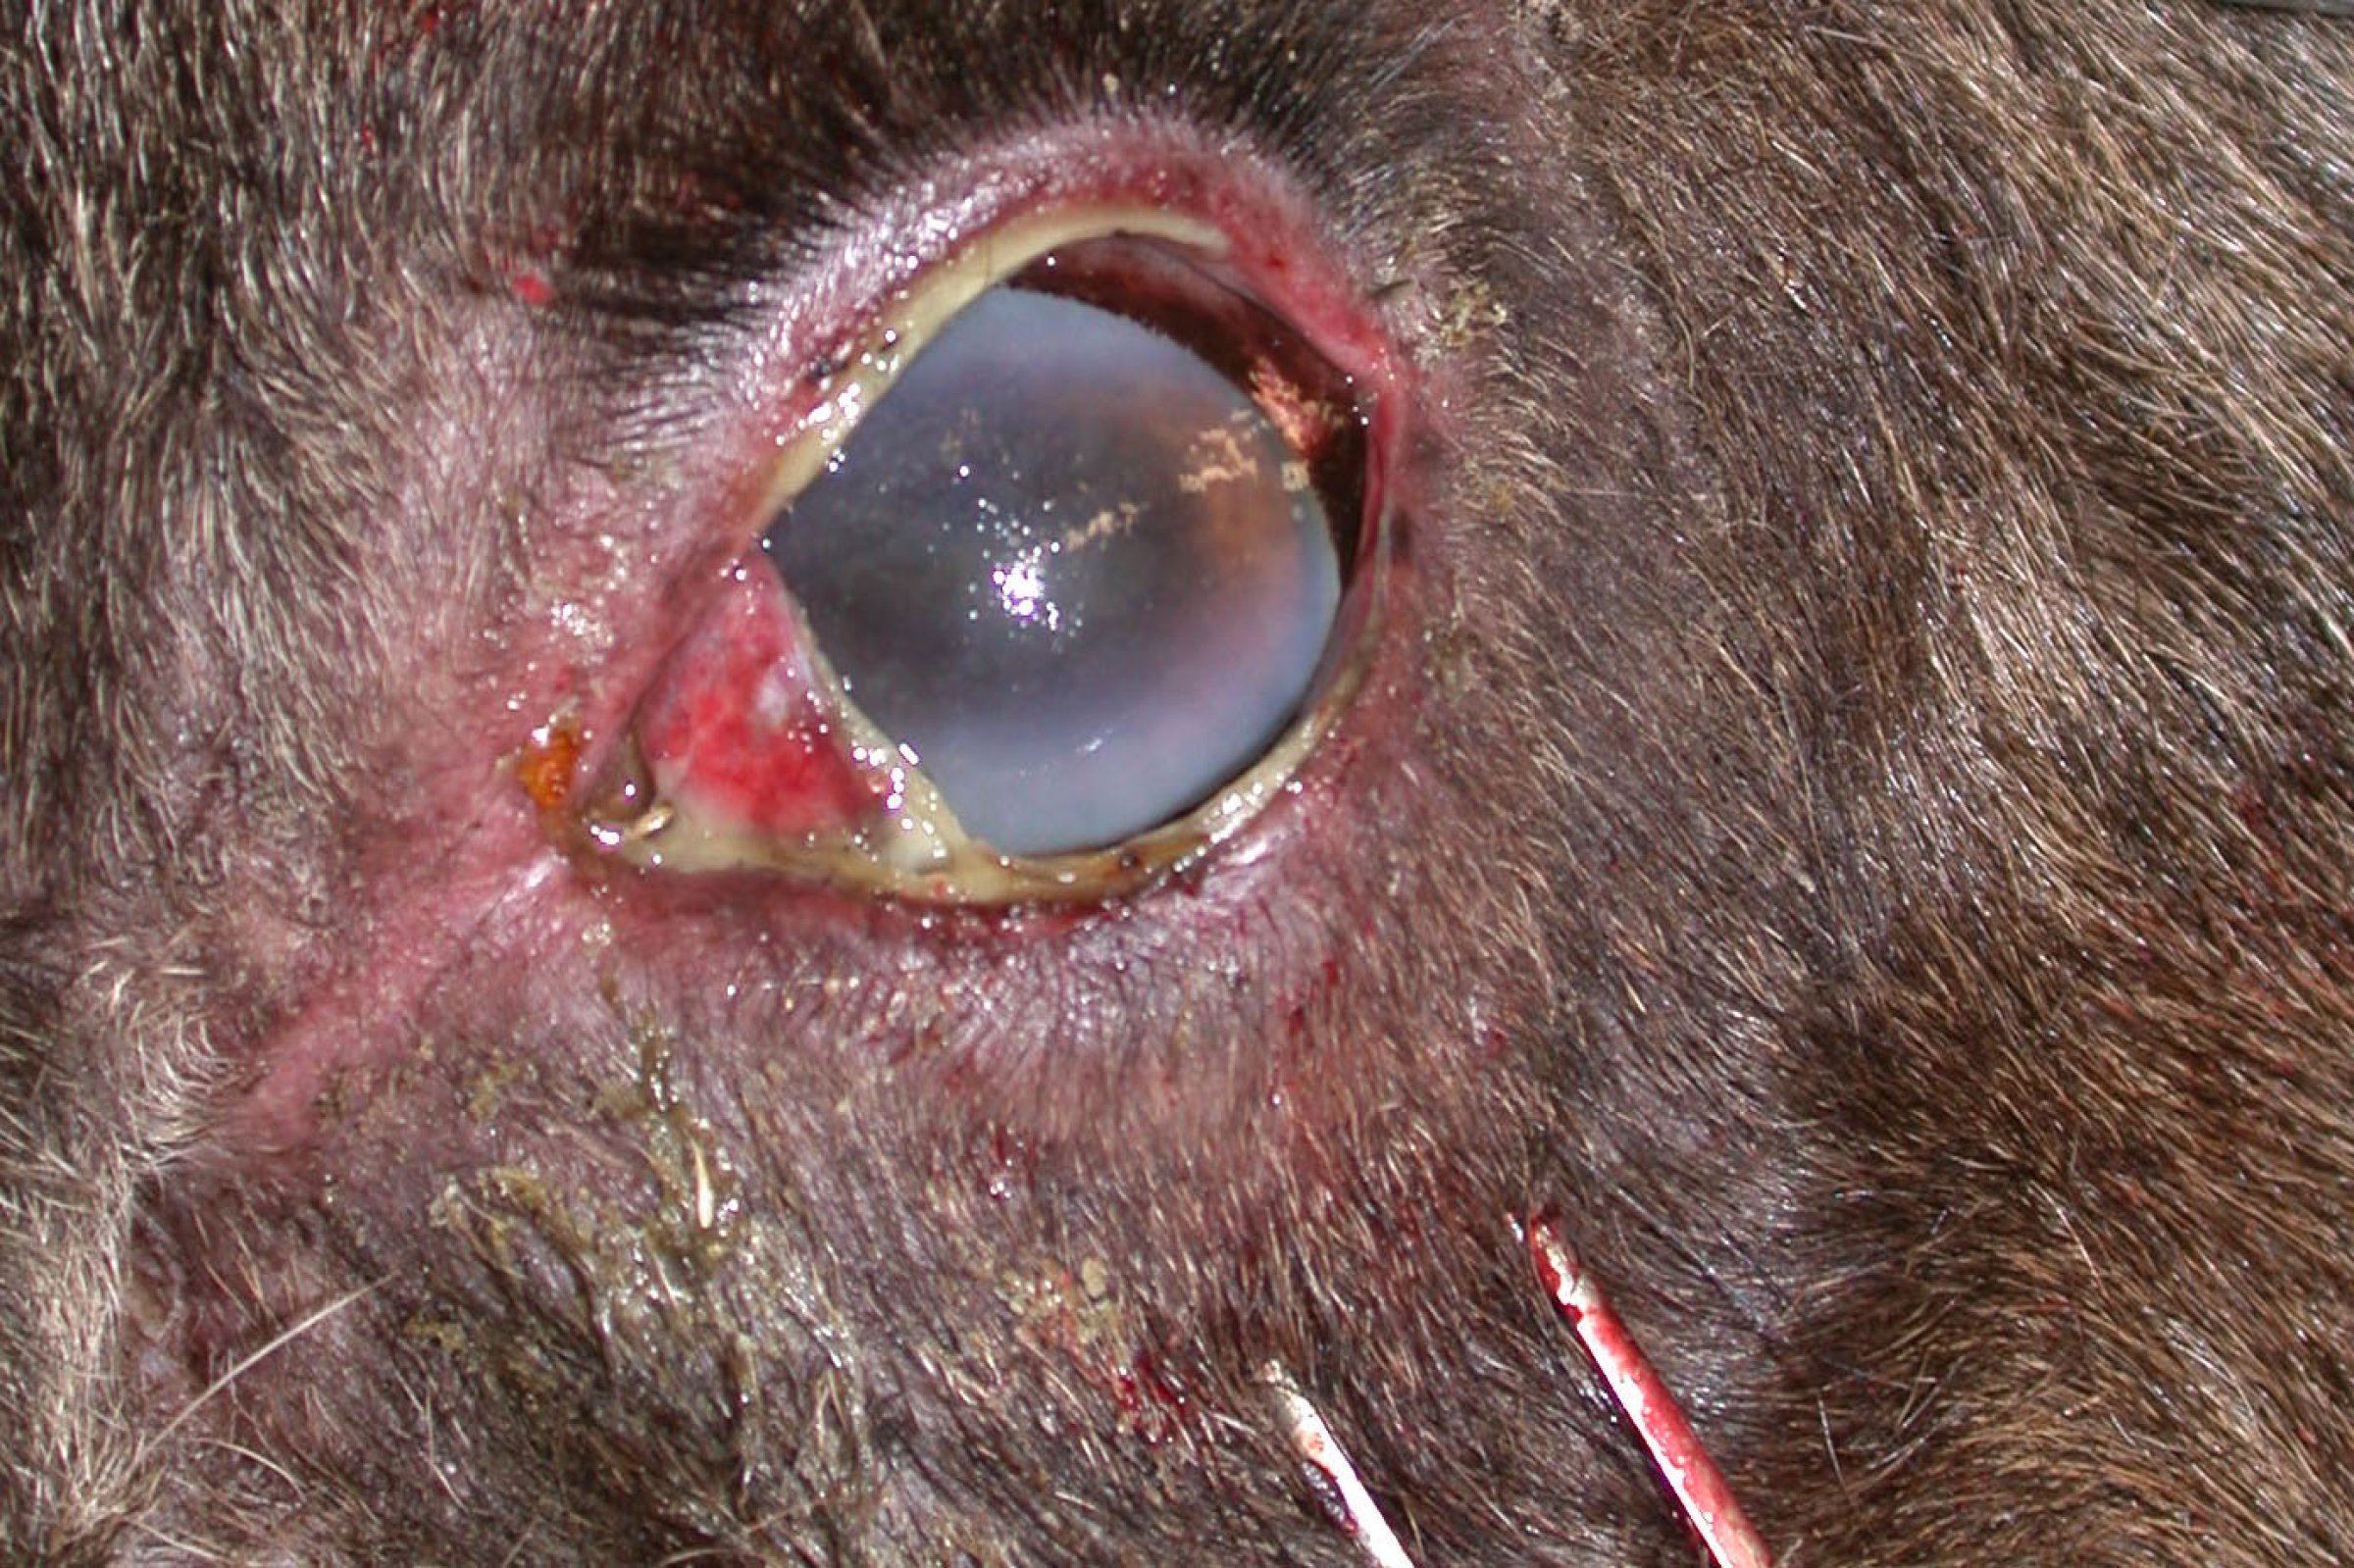 Augeforandring ved vondarta katarrfeber hos ein elg: Hornhinna er blakka i ytterkant, og ein ser augekatarr med rødme og verk (puss). Foto: Veterinærinstituttet